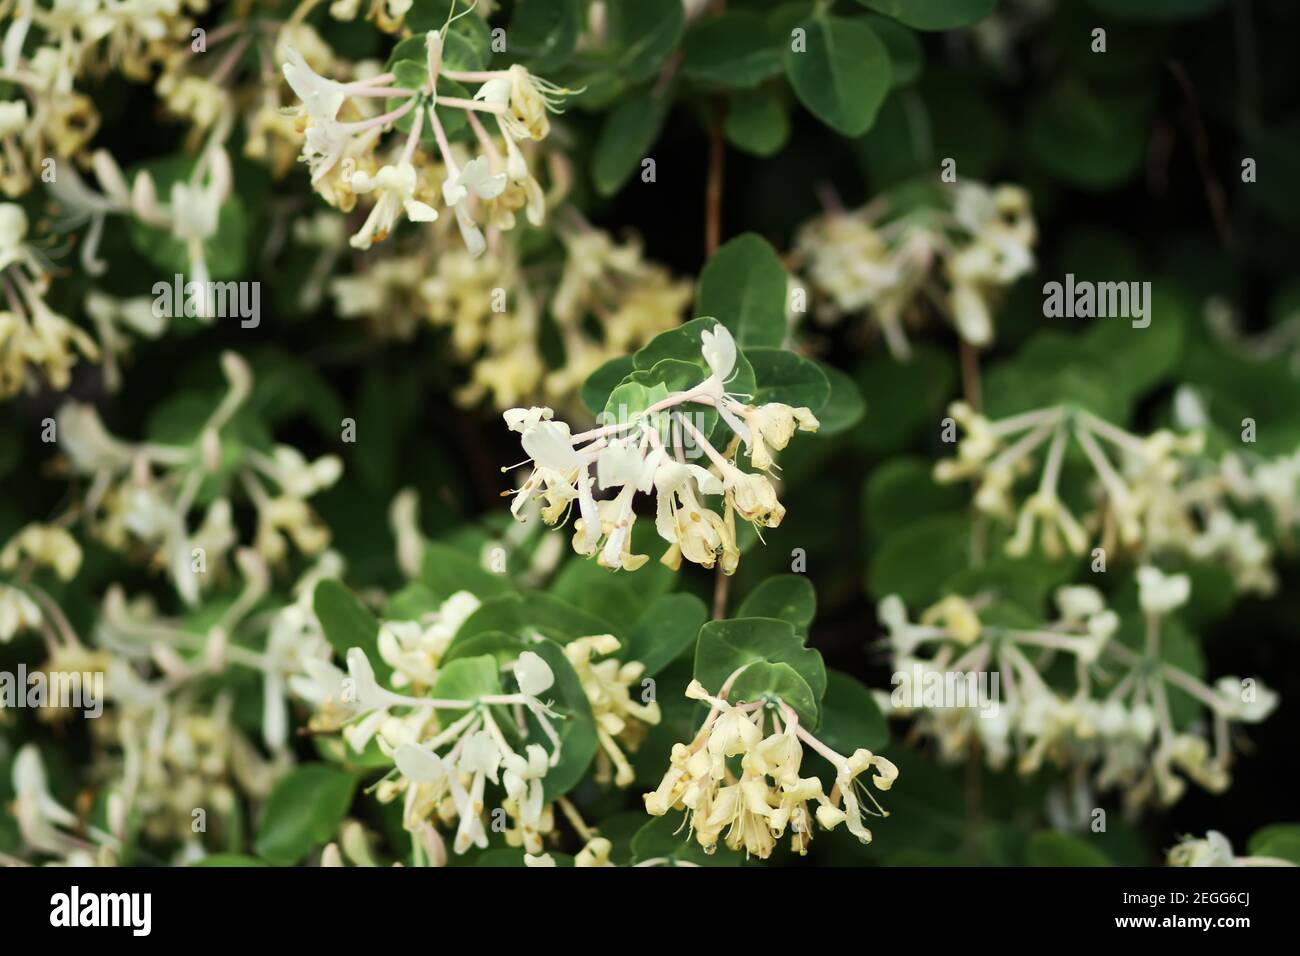 Honeysuckle white fragrant flowers in spring park. Stock Photo